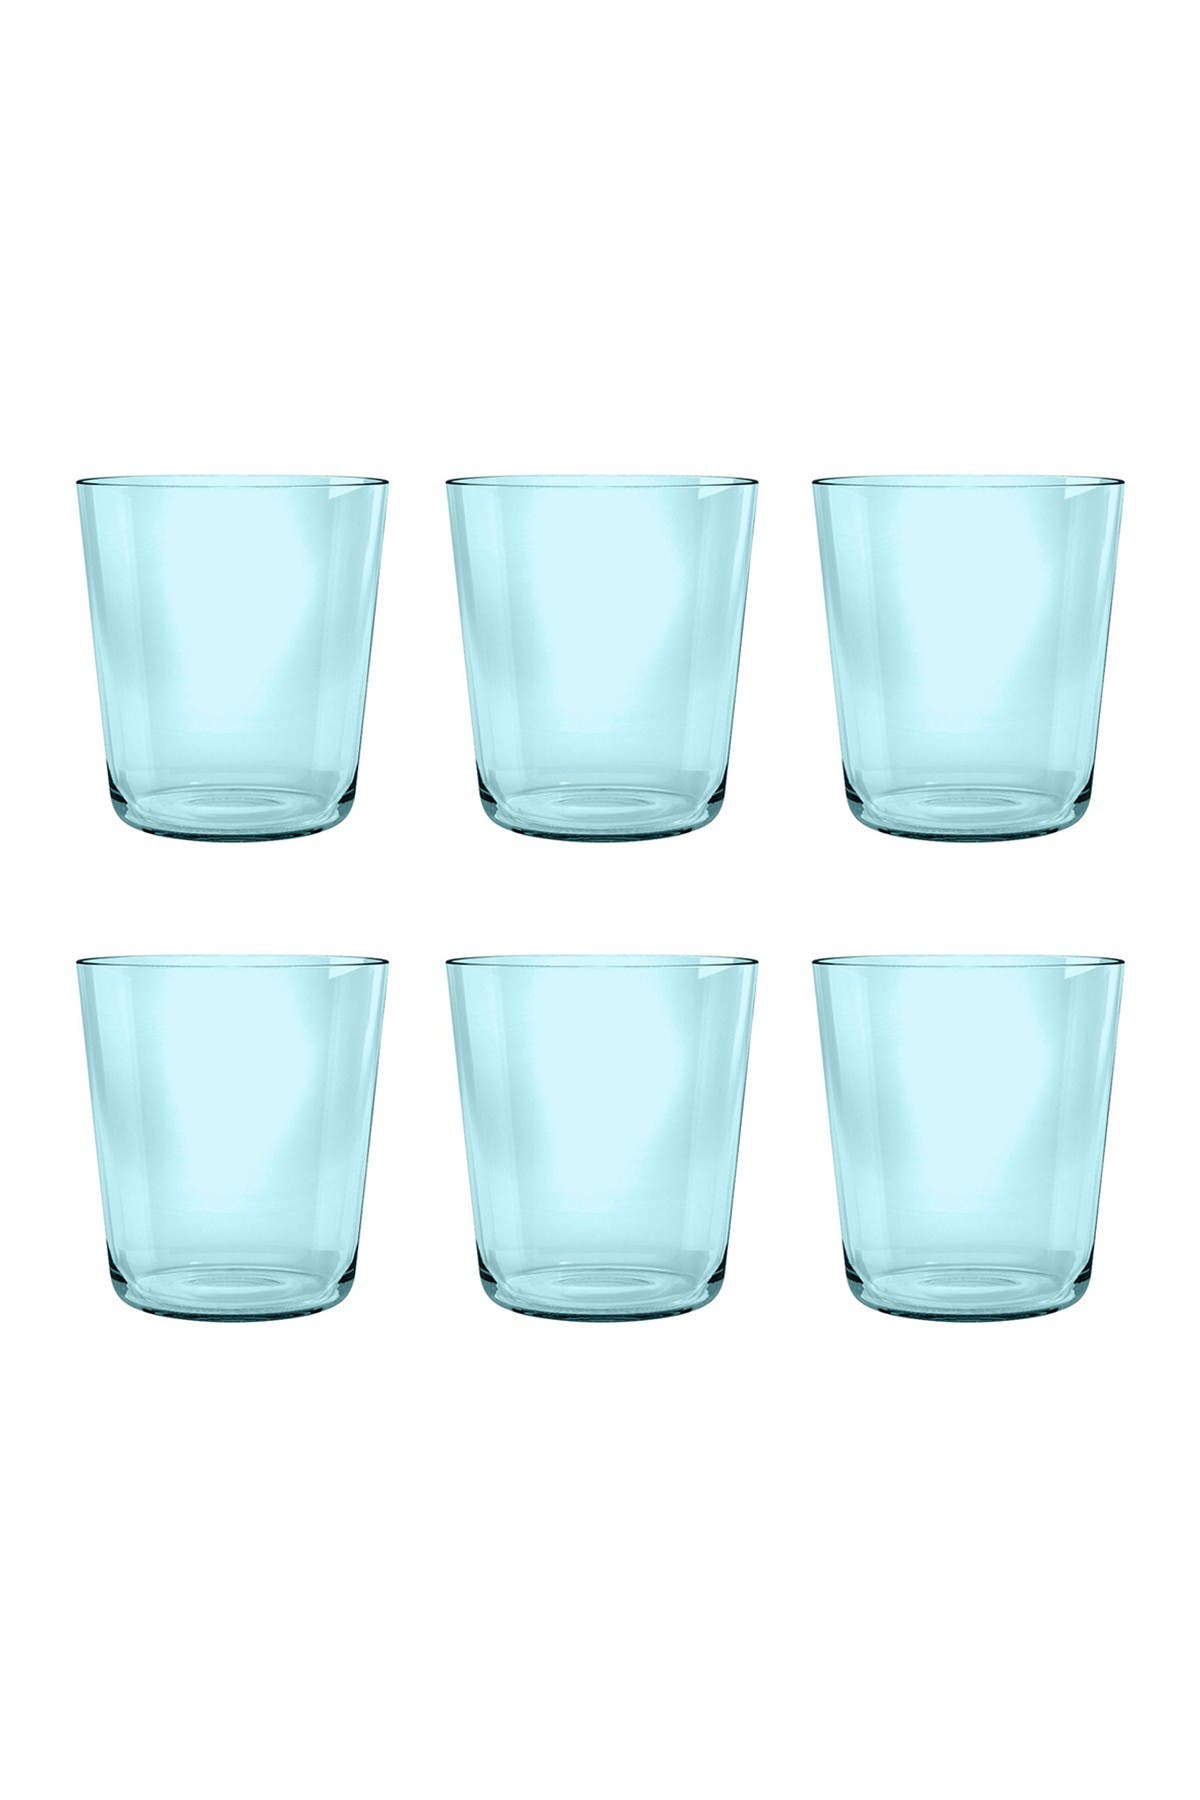 Tarhong 15.9 Oz. Simple Dof Acrylic Cups In Aqua